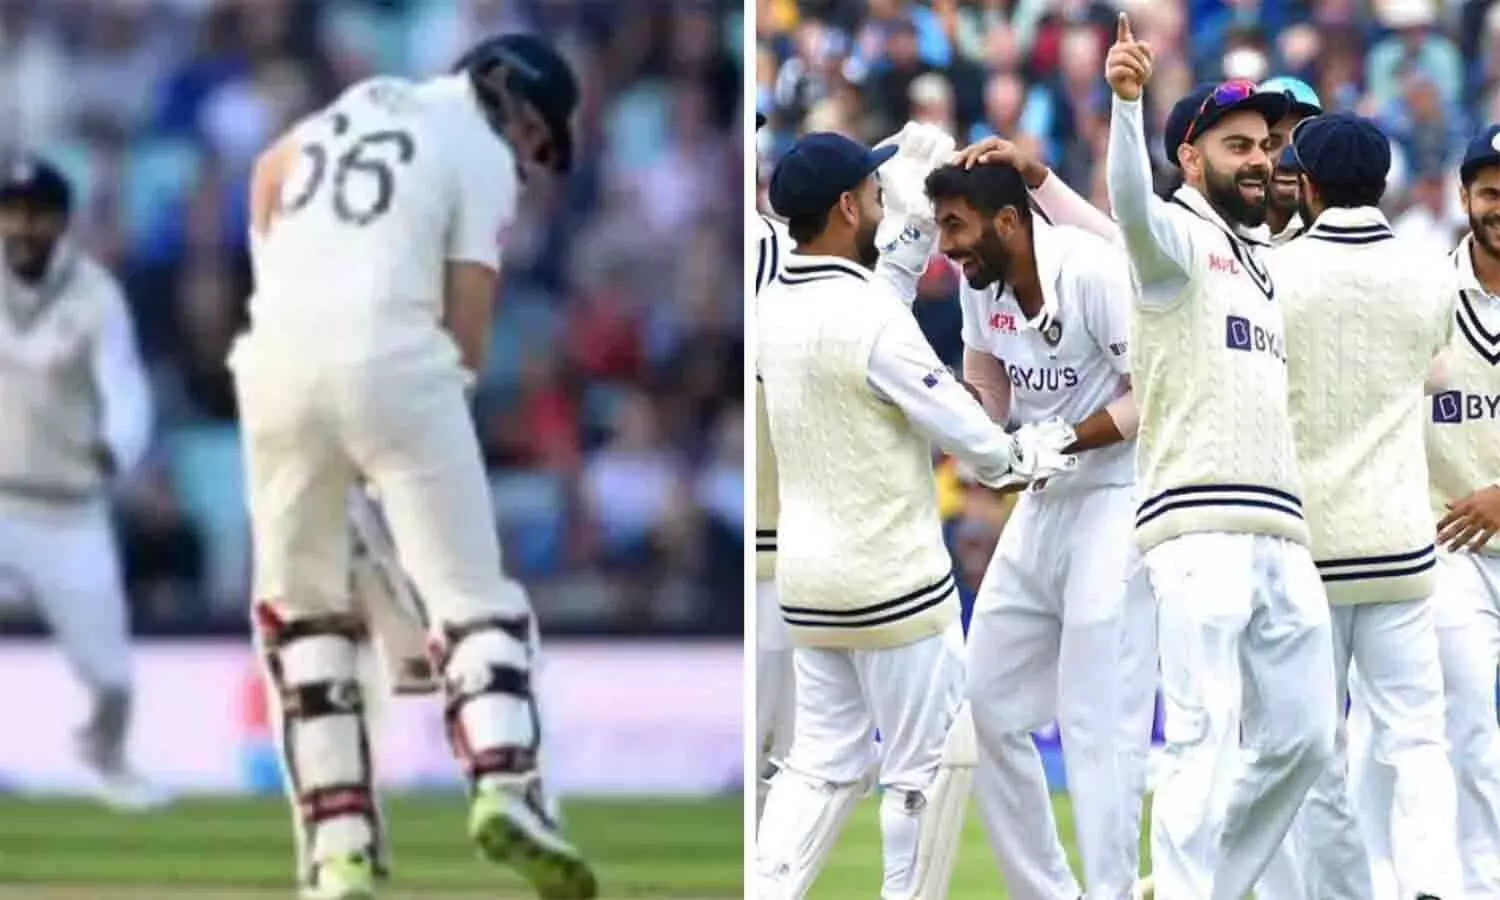 ENG vs IND 5th Test: बल्लेबाजों के बाद गेंदबाजों ने दिखाया कमाल, इंग्लैंड पर फॉलोऑन का खतरा